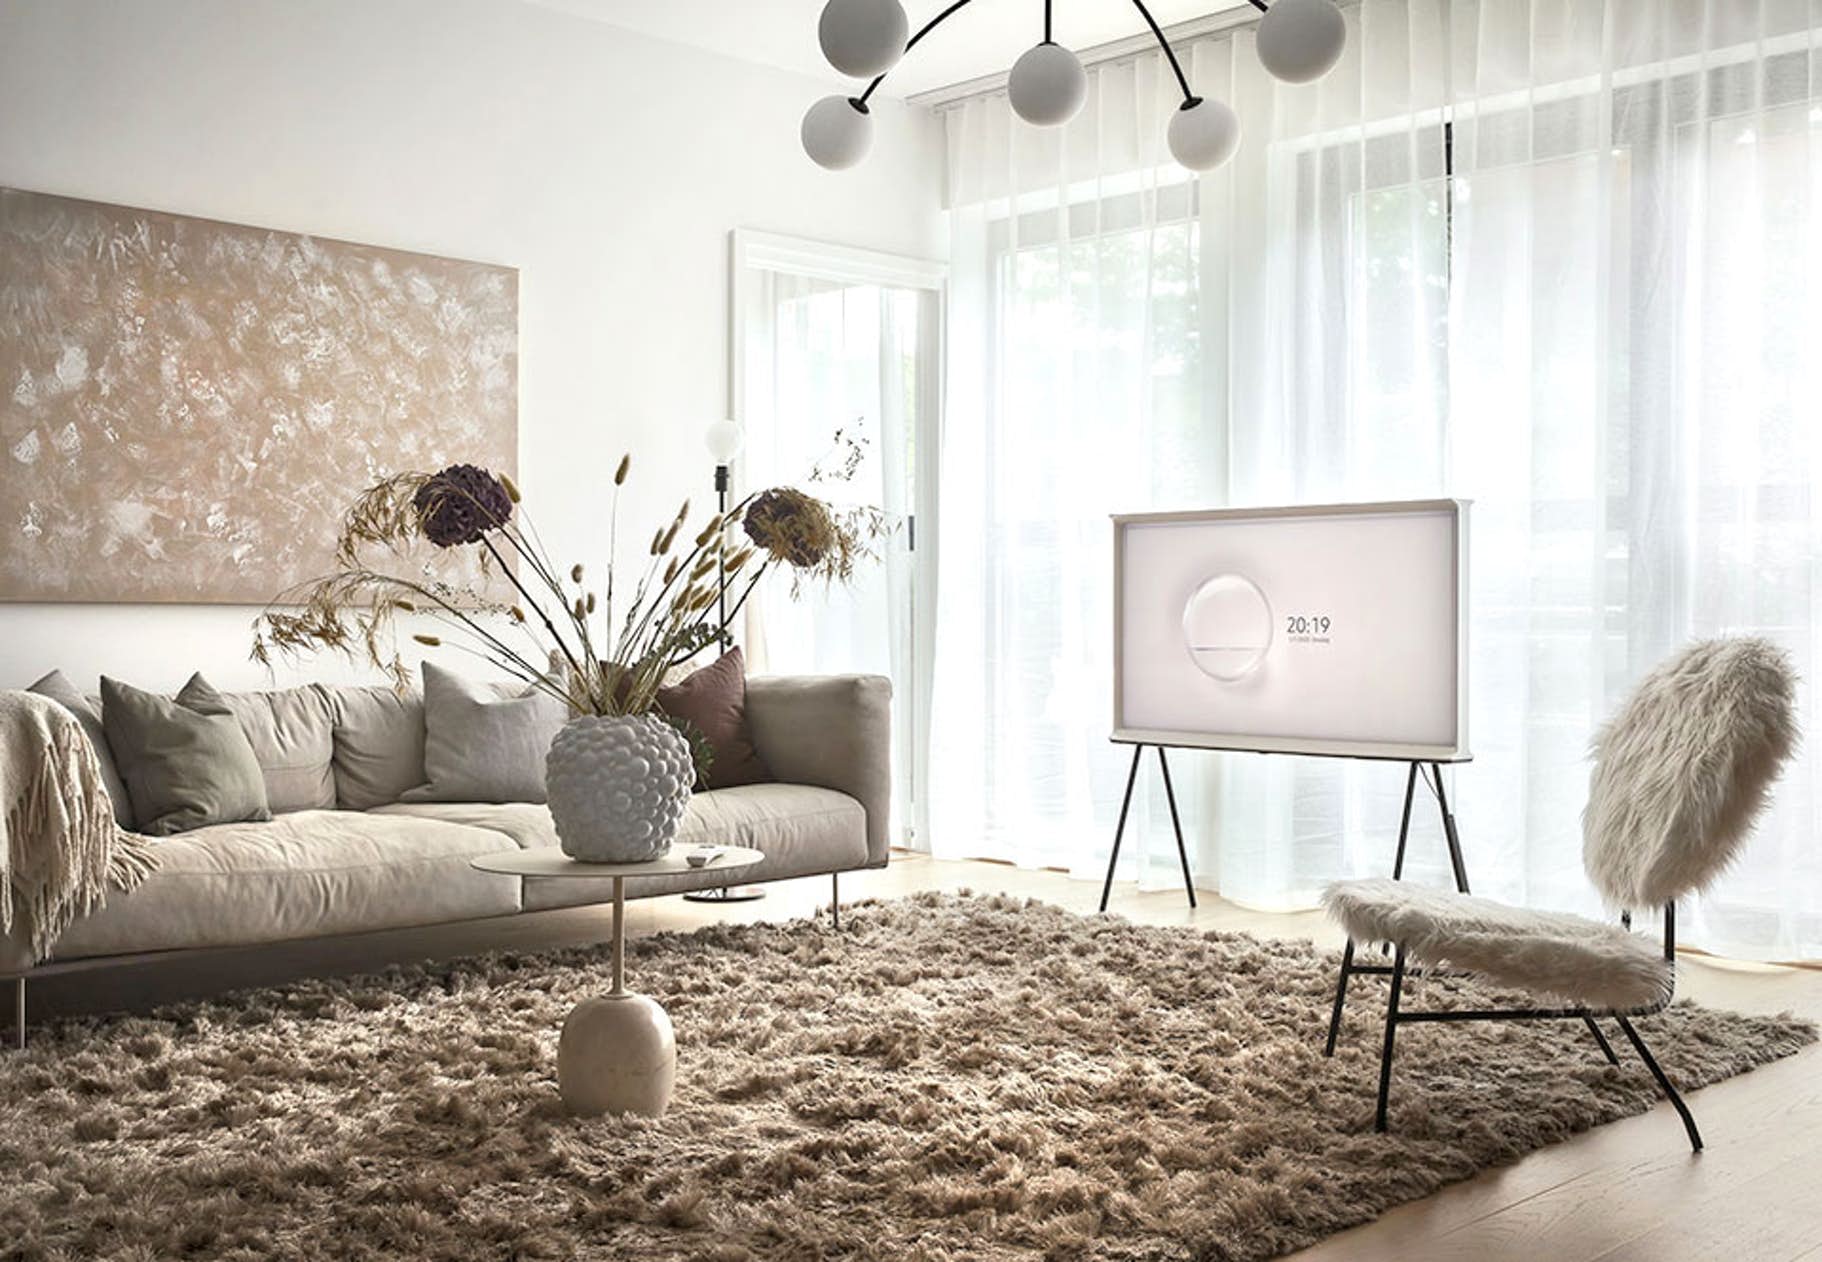 Những ý tưởng đặt tivi mới mẻ giúp phòng khách thêm ấn tượng - Ảnh 3